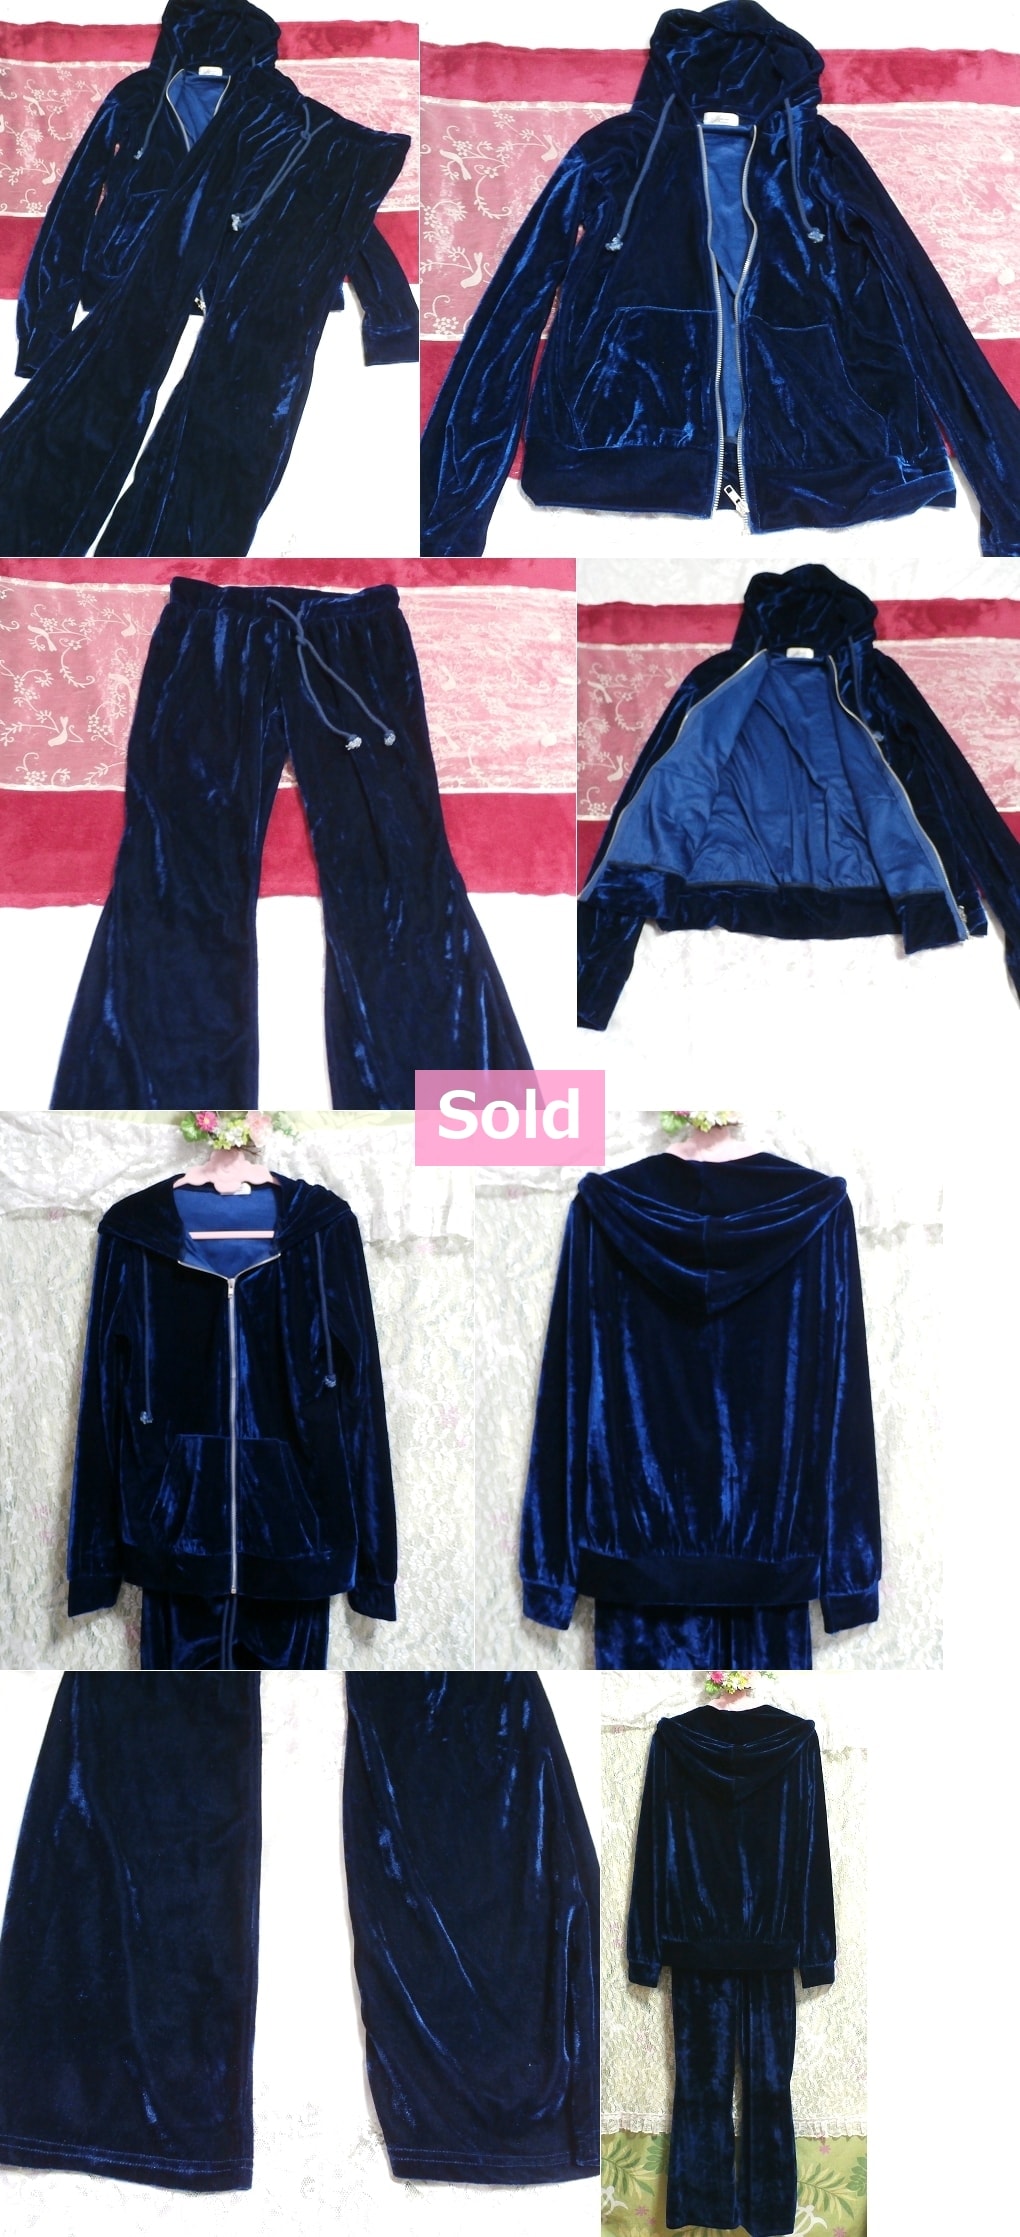 Синее темно-синее пижамное пальто из велюрового джерси-кардиган, 2 комплекта Темно-синее велюровое пижамное пальто из джерси, 2 комплекта